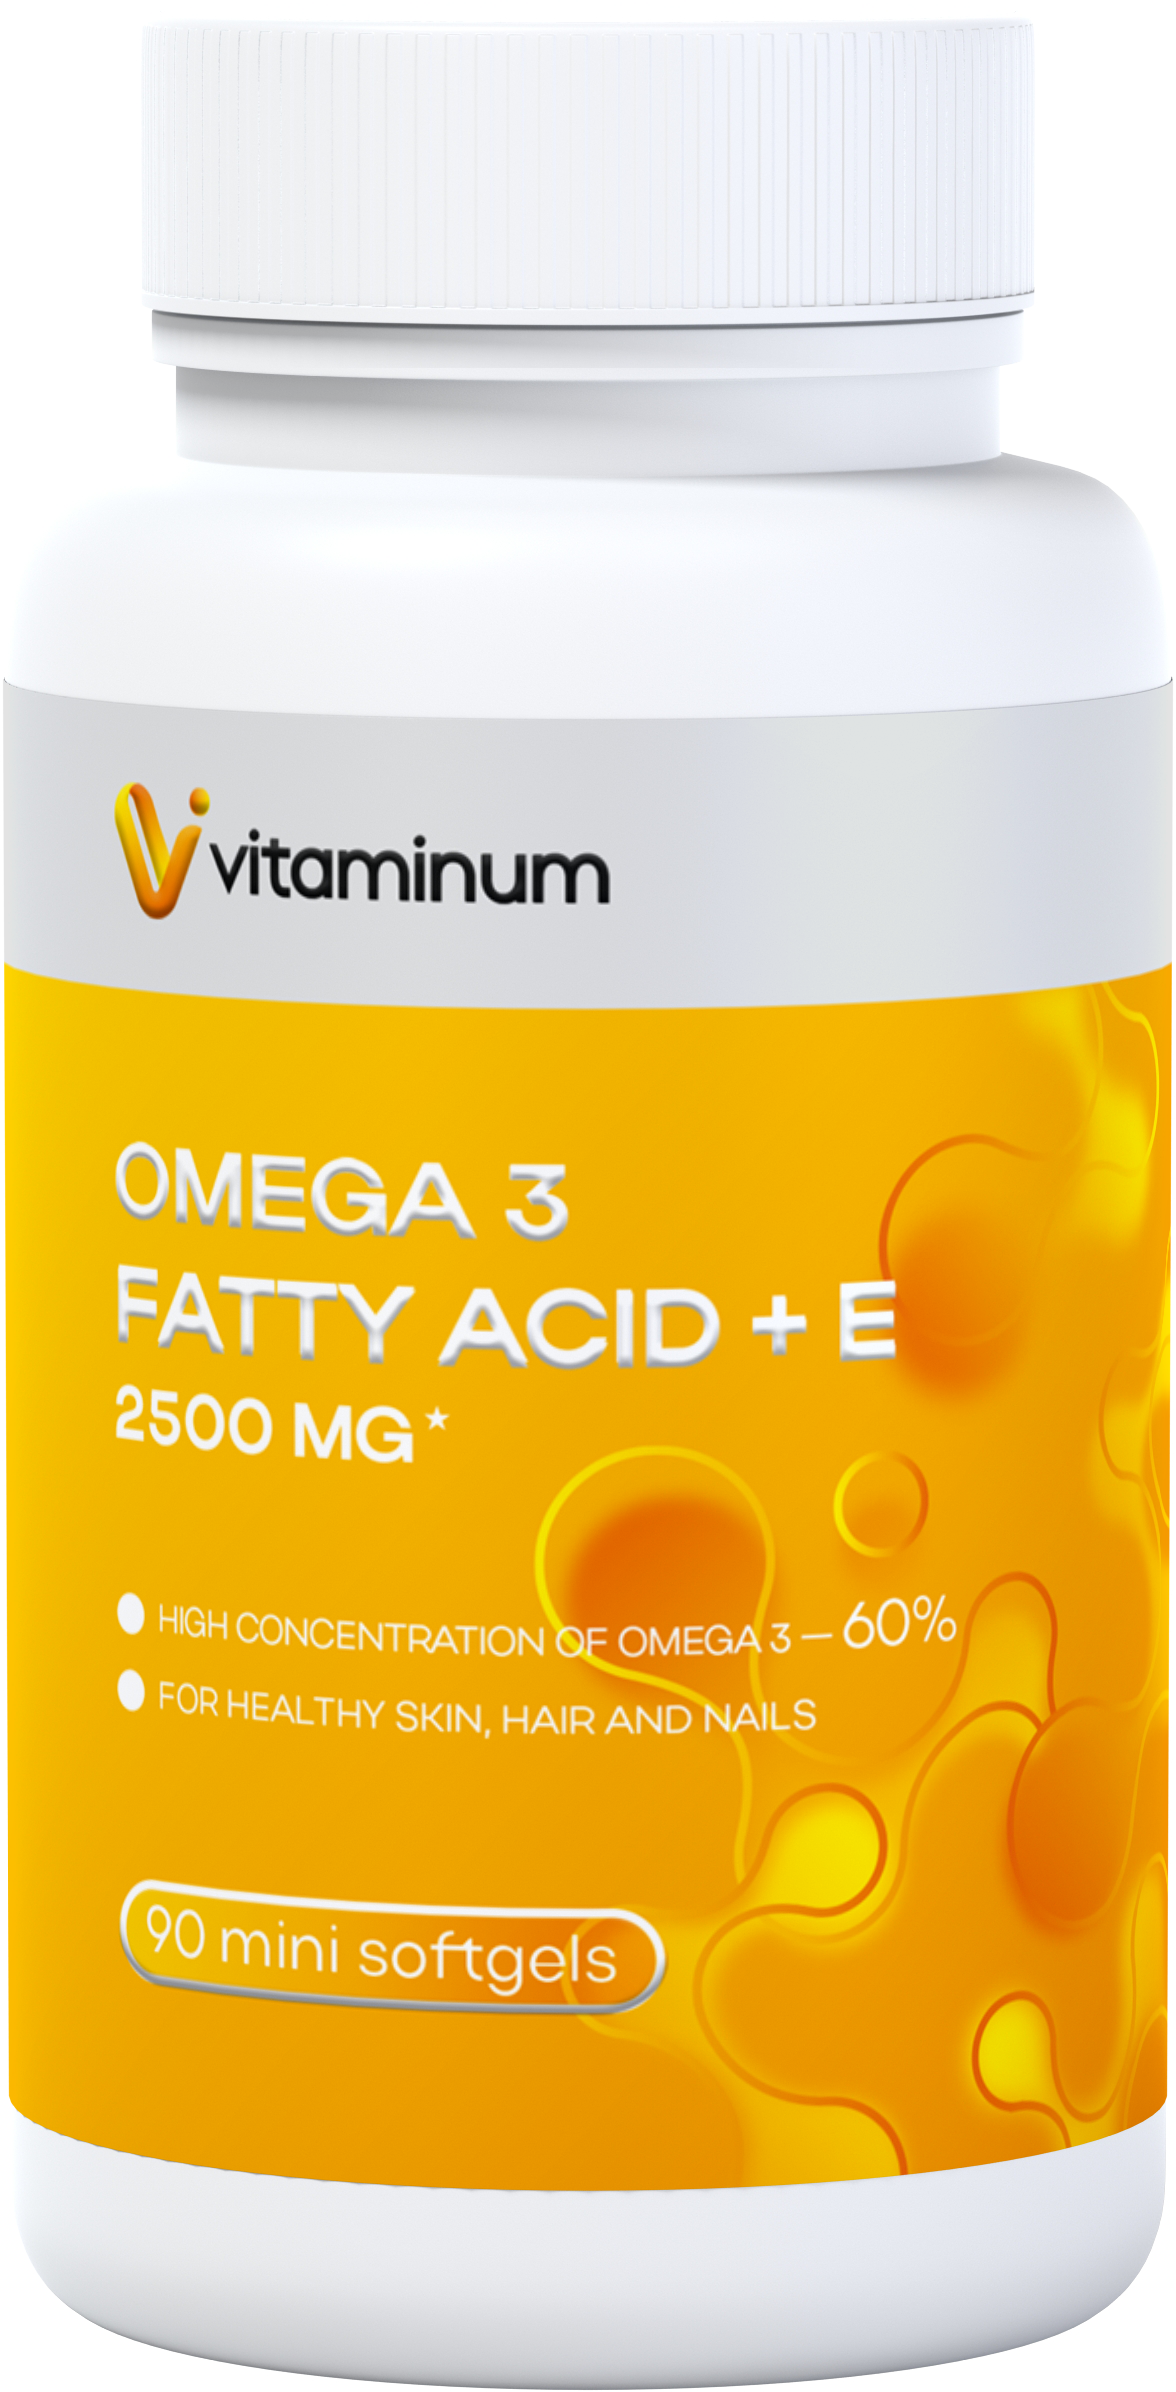  Vitaminum ОМЕГА 3 60% + витамин Е (2500 MG*) 90 капсул 700 мг   в Кириши